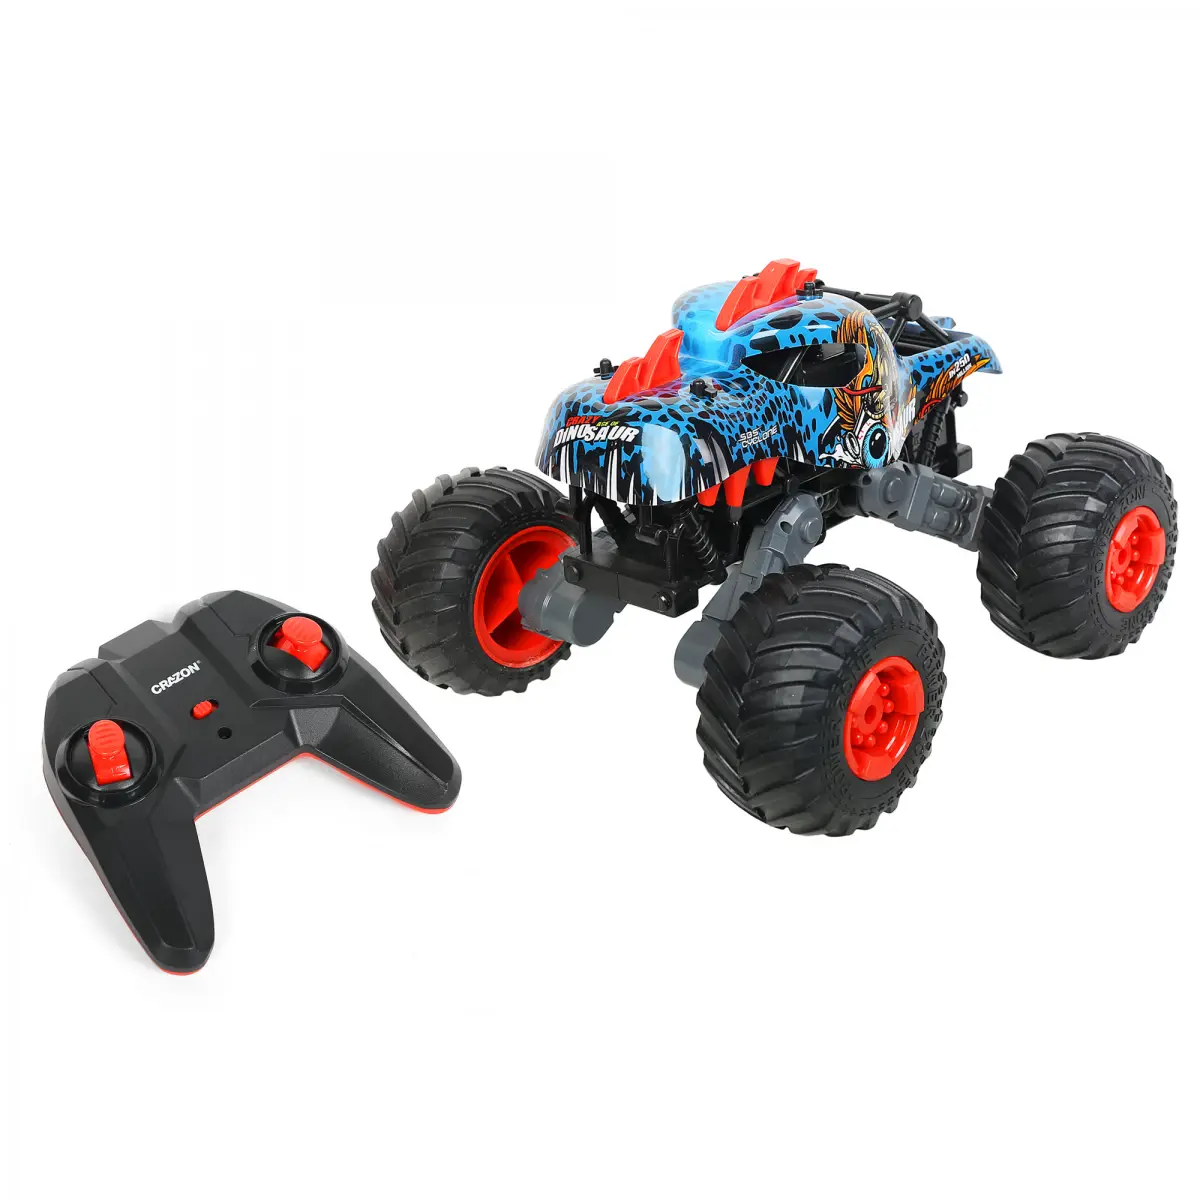 Ralleyz Monster Racing Car, 4 Wheel Drive, Remote Control Toys, 8Y+, Multicolour